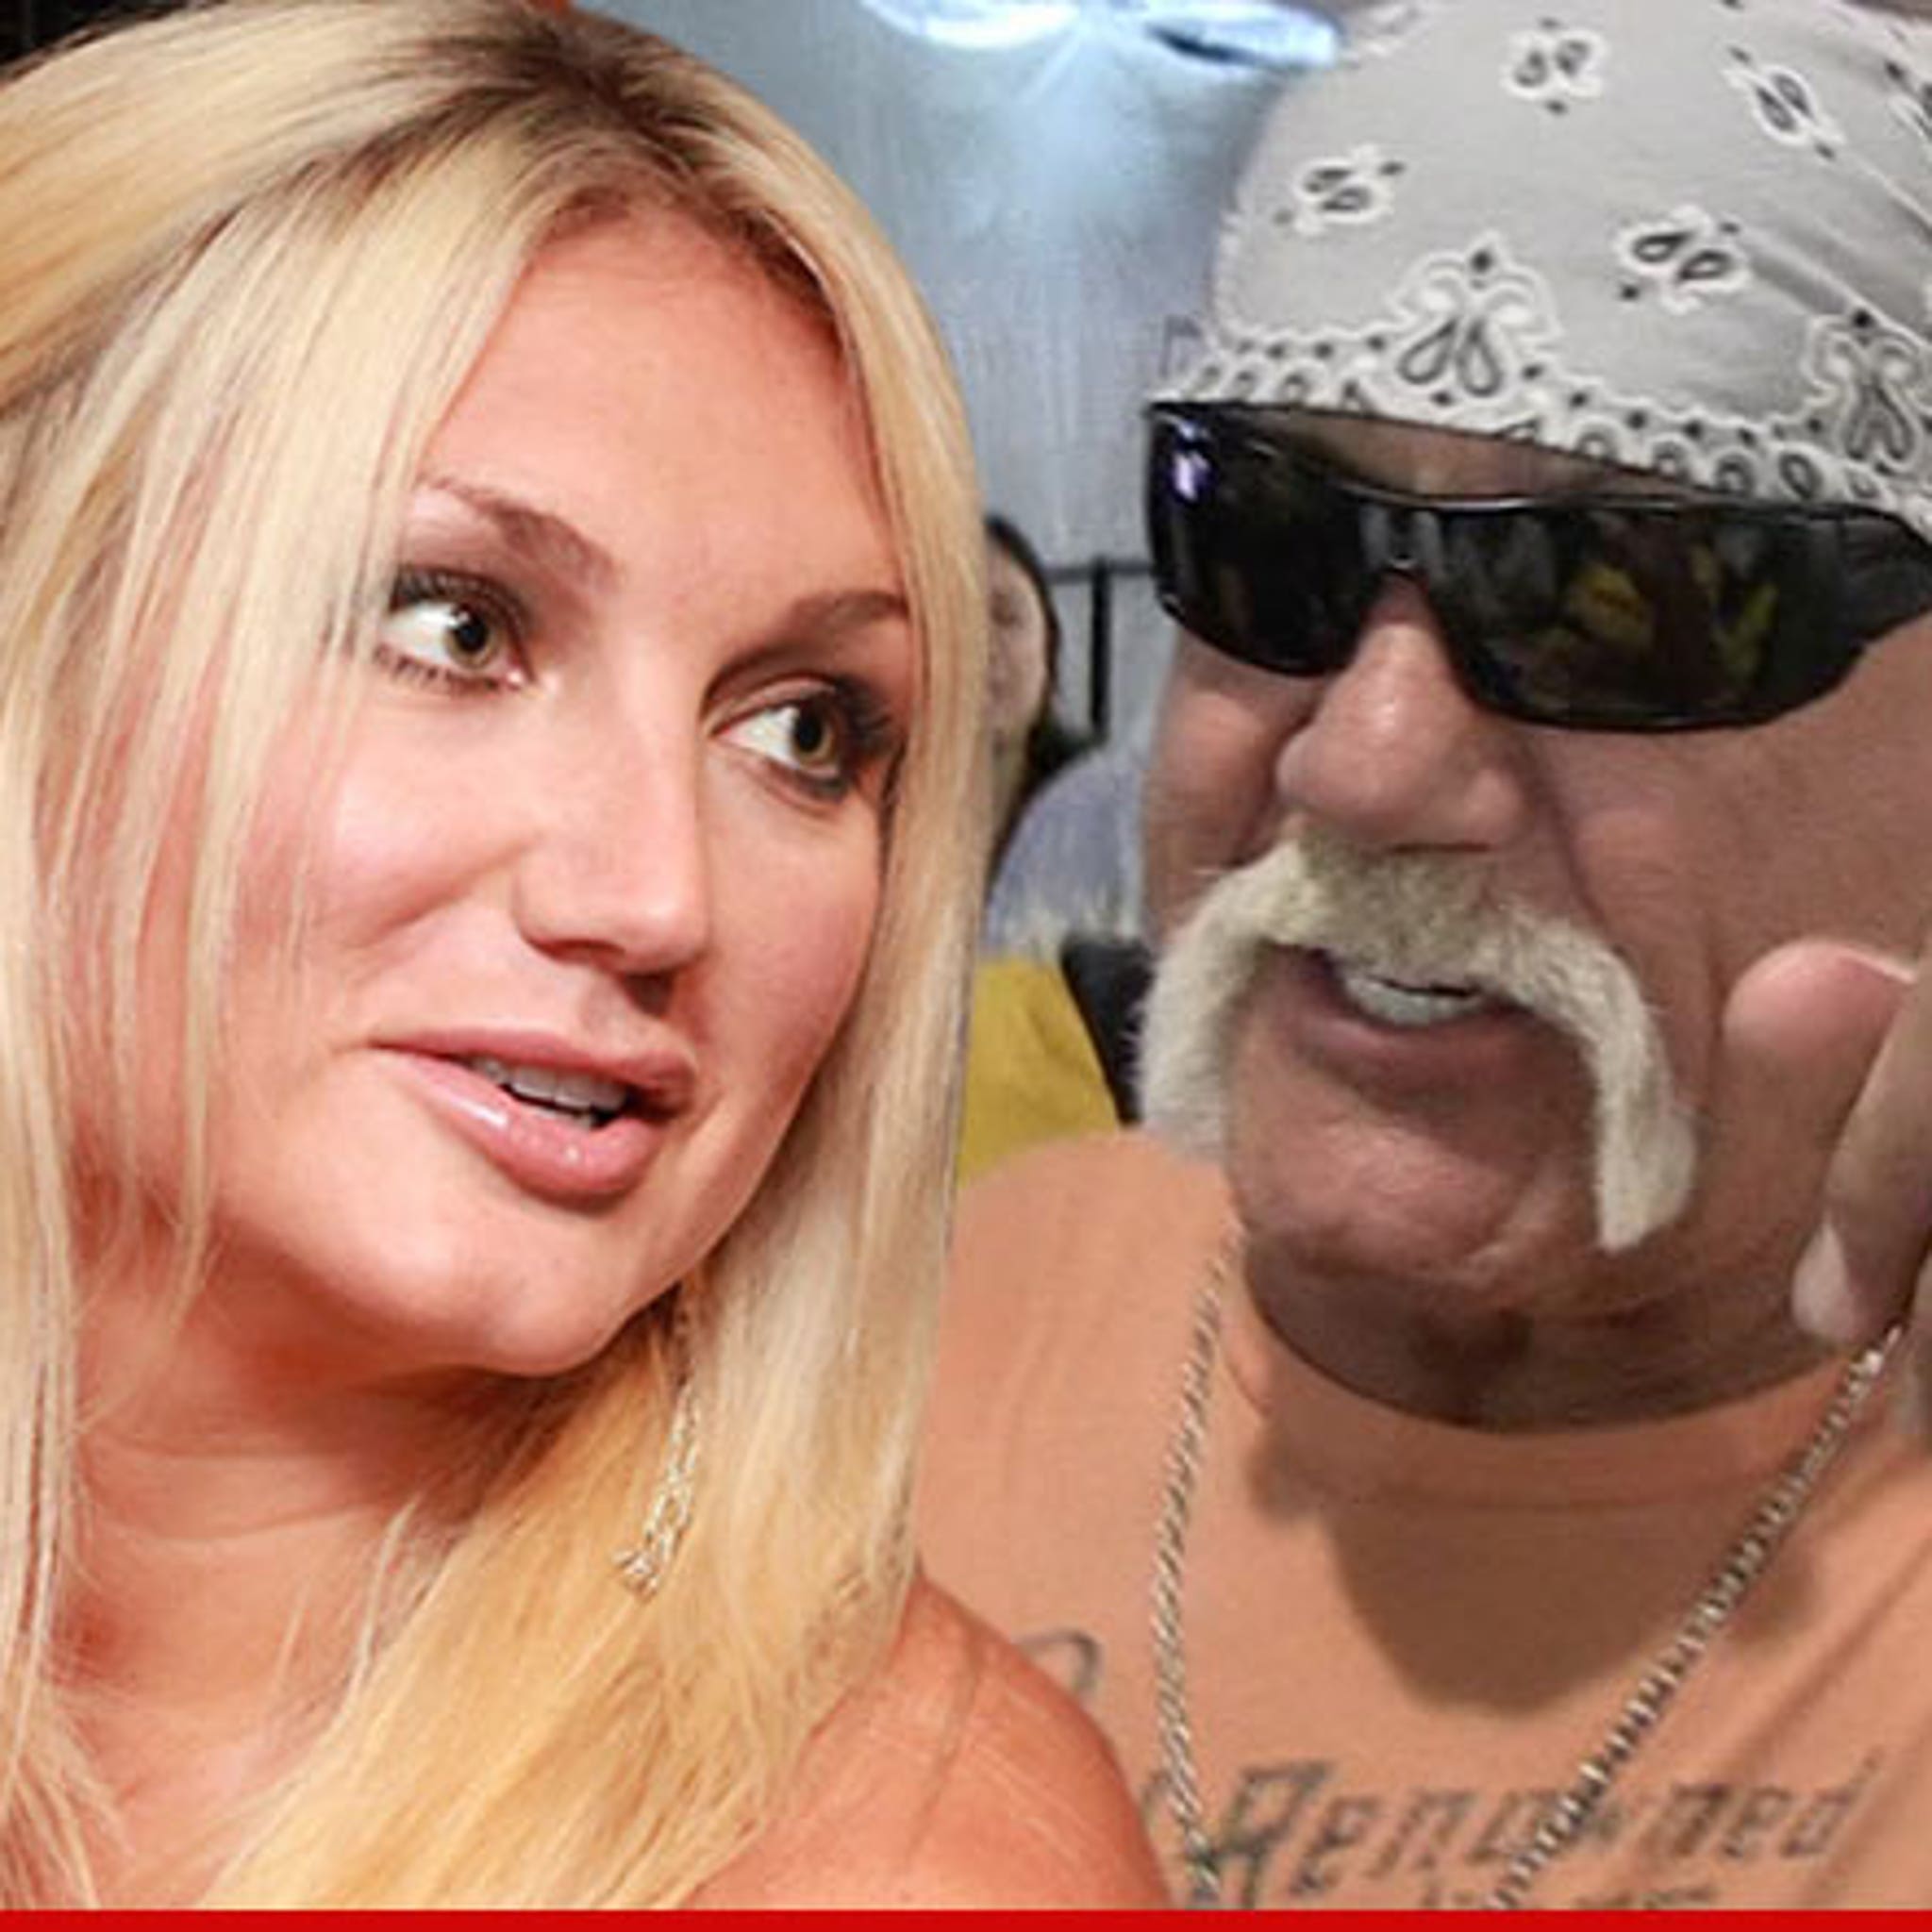 bånd Post Jobtilbud Hulk Hogan -- Brooke Defends Dad ... with a Poem?!?